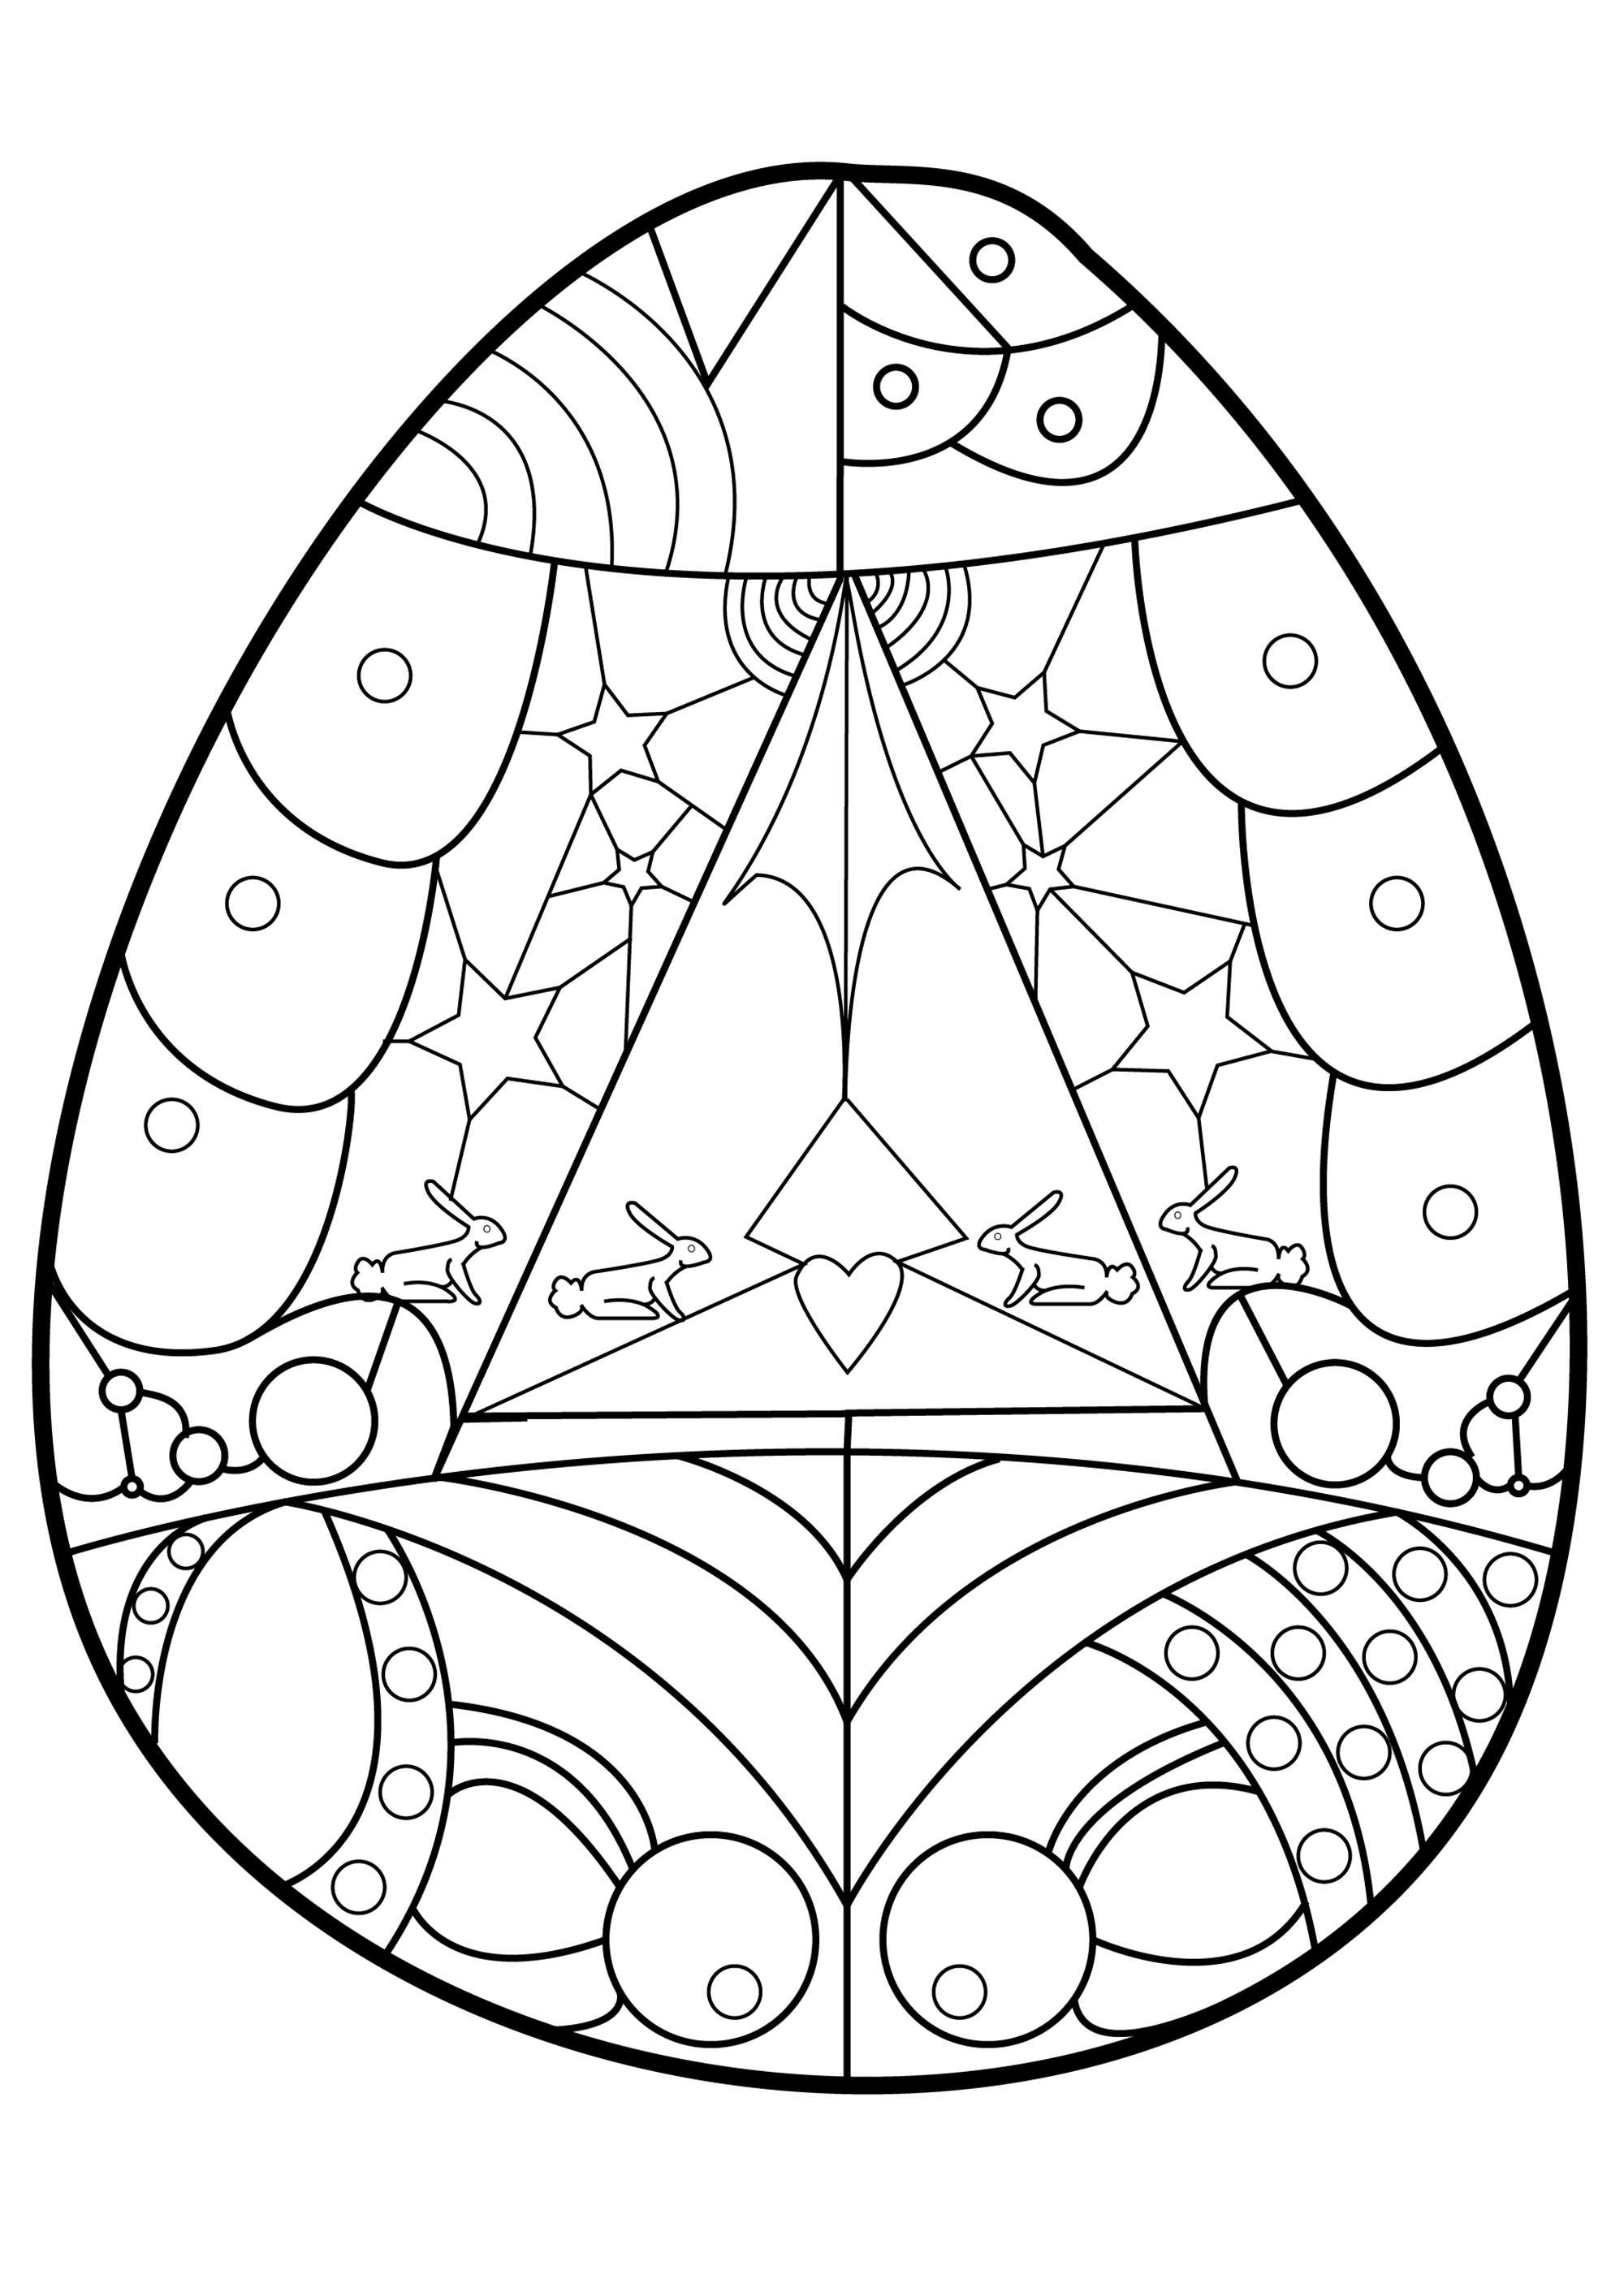 Várias formas e padrões geométricos para colorir neste bonito ovo de Páscoa